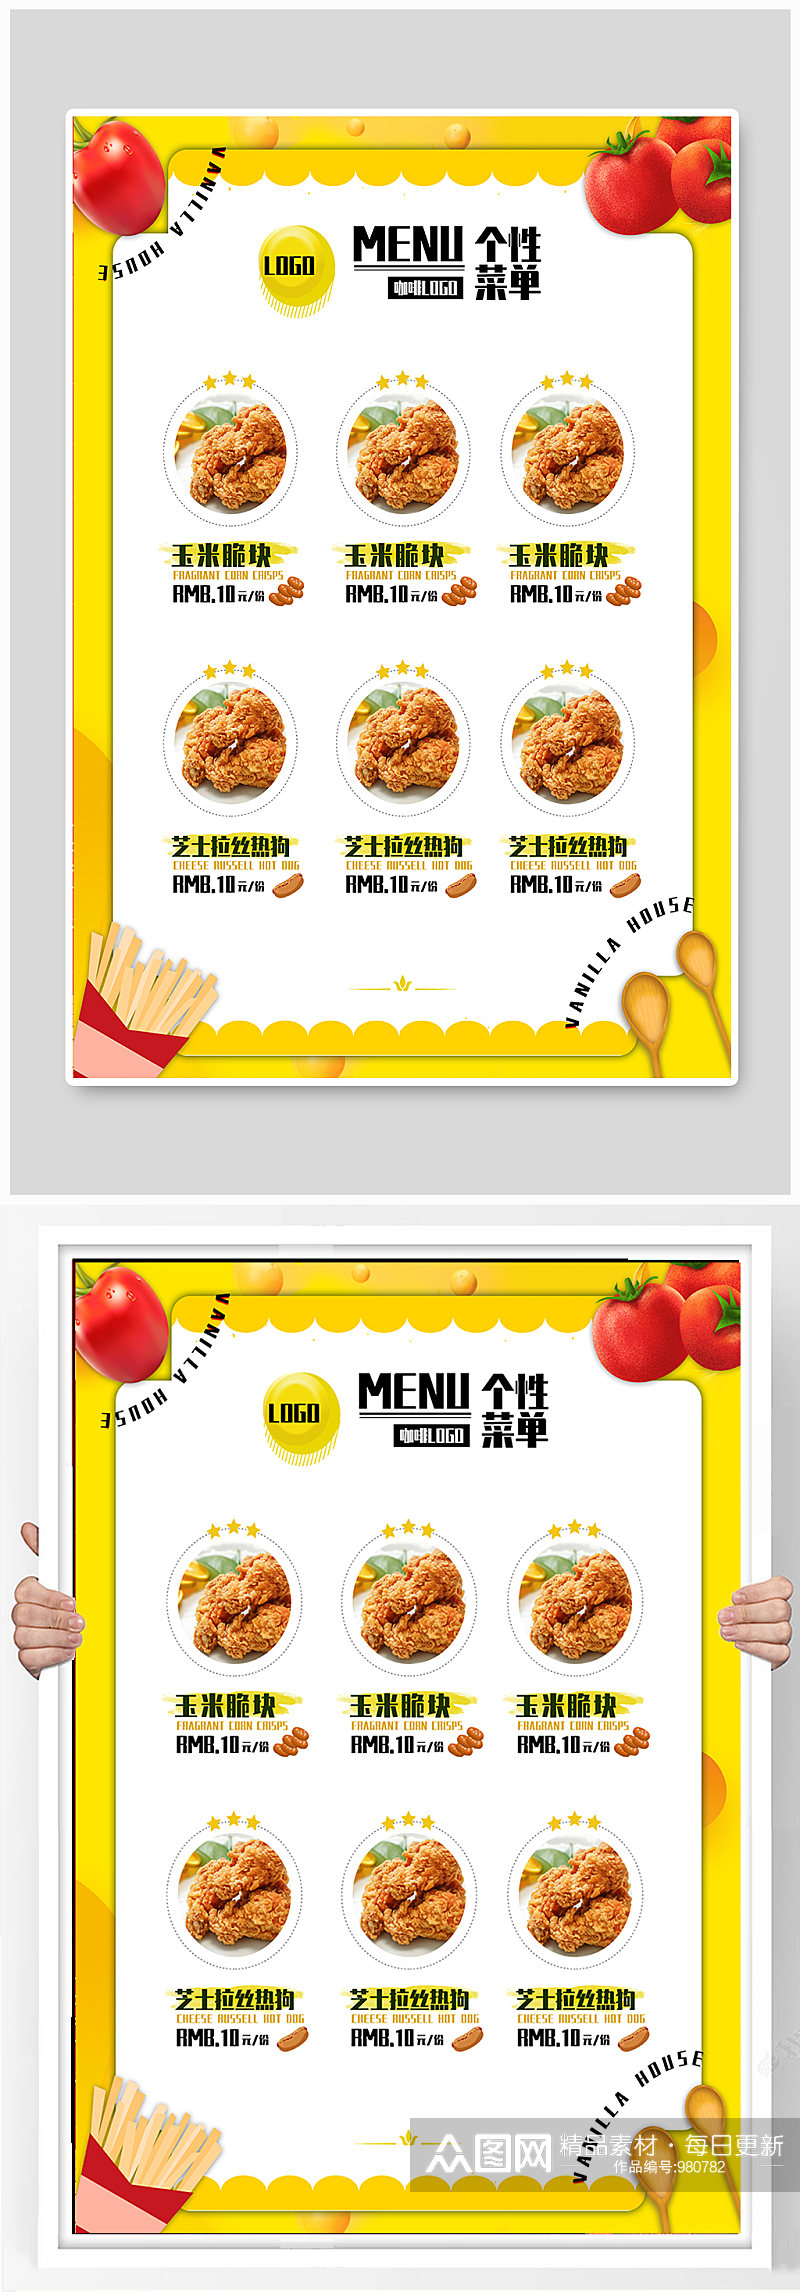 炸鸡店西餐海报展板素材